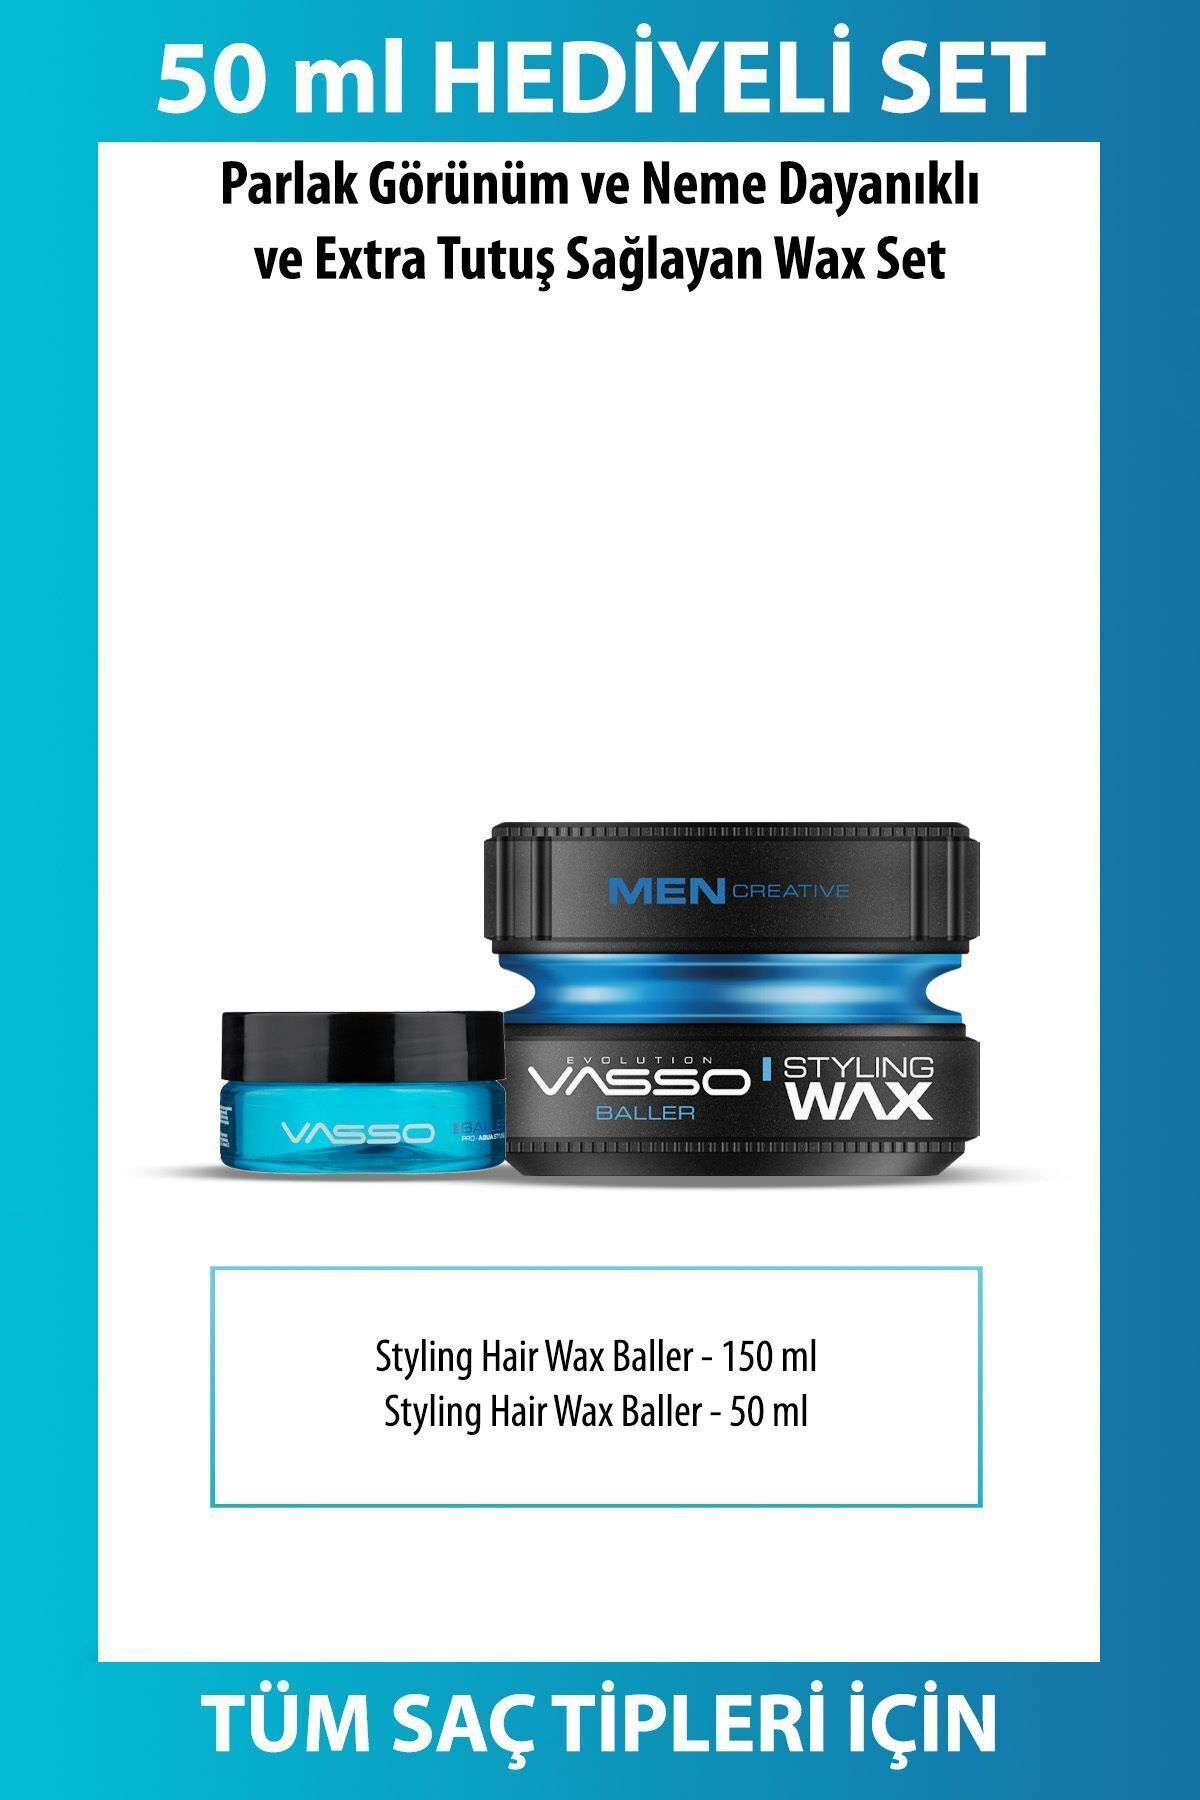 Vasso Men 24 Saat Tutuş Sağlayan Tüm Saç Tipleri Için Parlak Görünüm Veren Wax(ÇANTA BOY HEDİYELİ)-baller